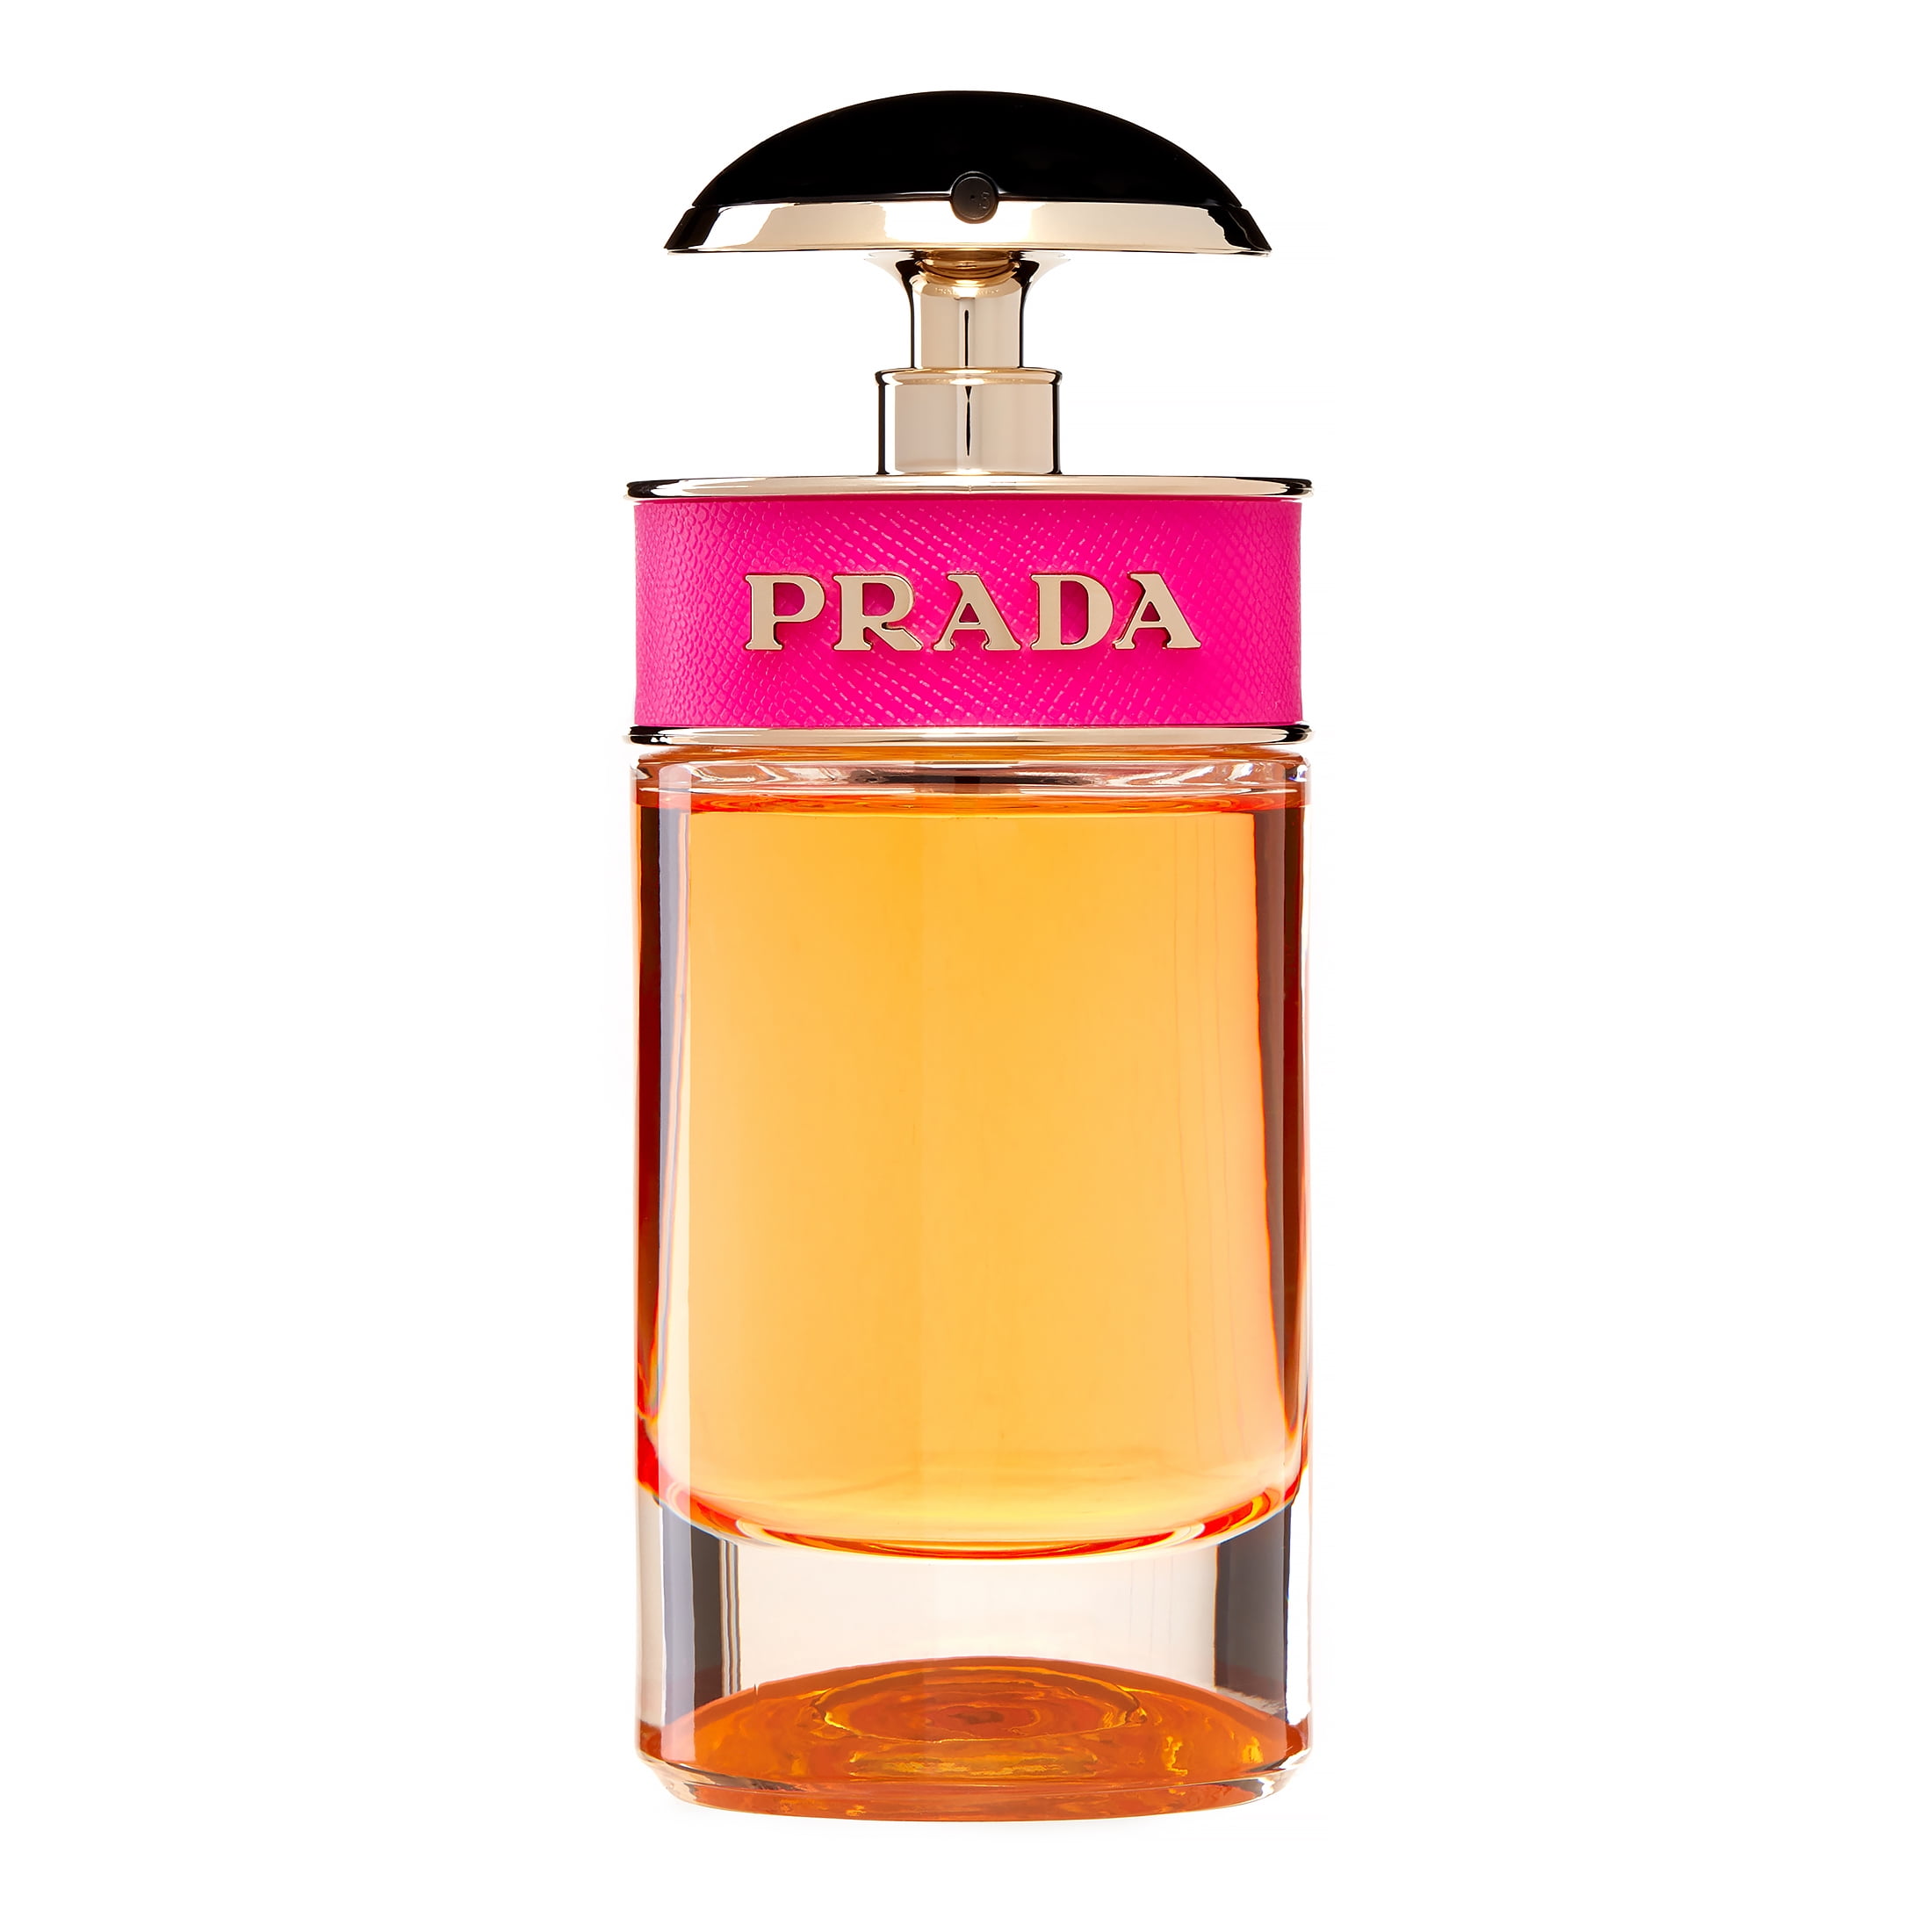 Prada Candy Eau De Parfum Spray, Perfume for Women, 1.7 Oz